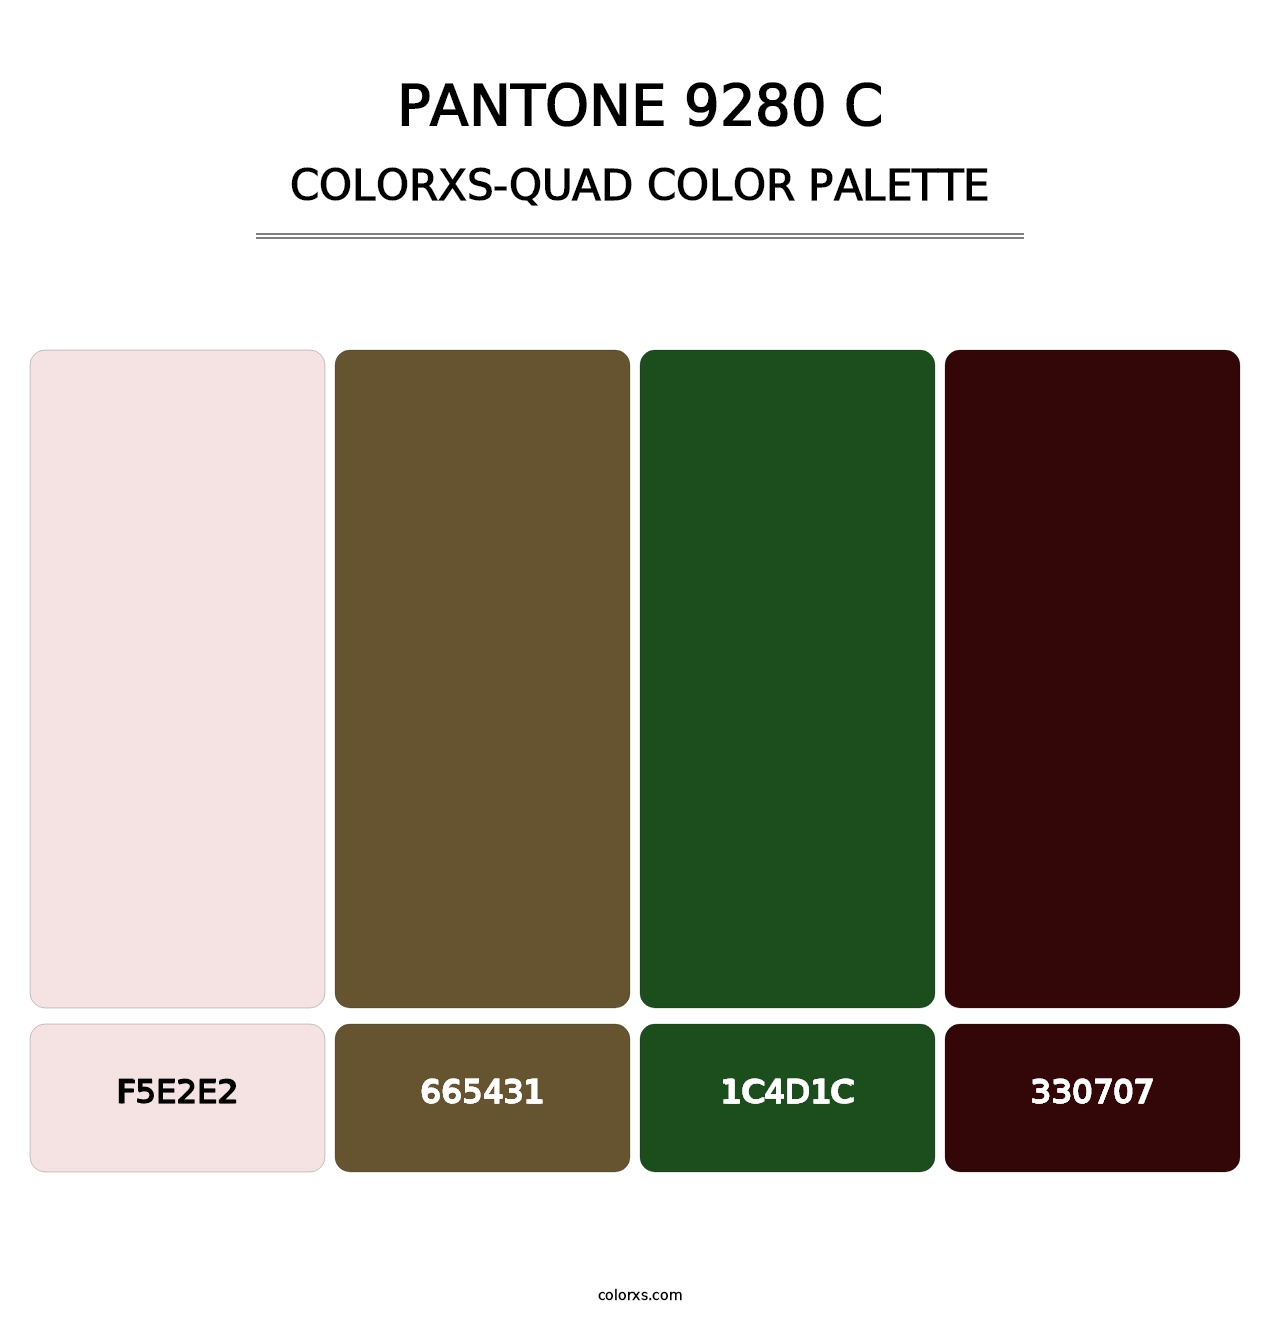 PANTONE 9280 C - Colorxs Quad Palette